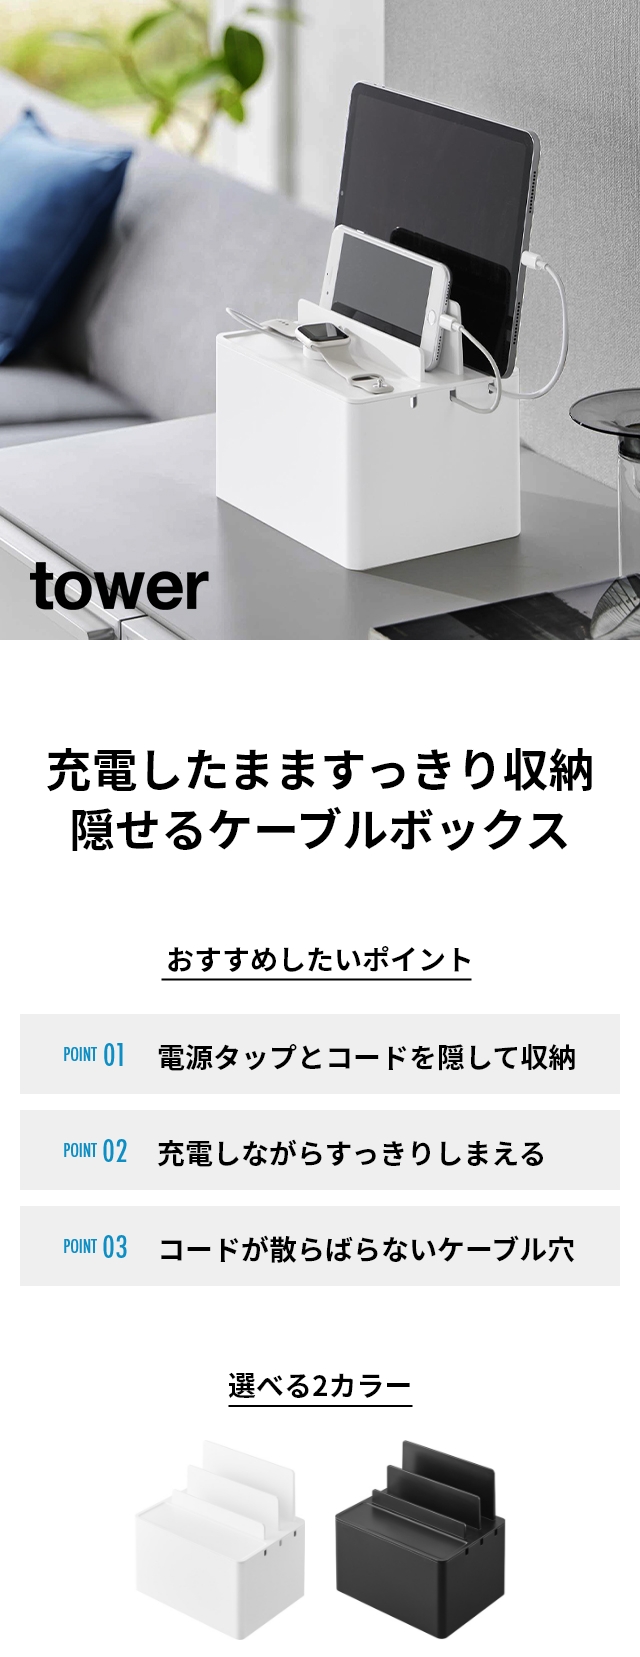 山崎実業 スマホスタンド 卓上 充電 タワー tower 充電ステーション タワー ホワイト ブラック 2194 2195